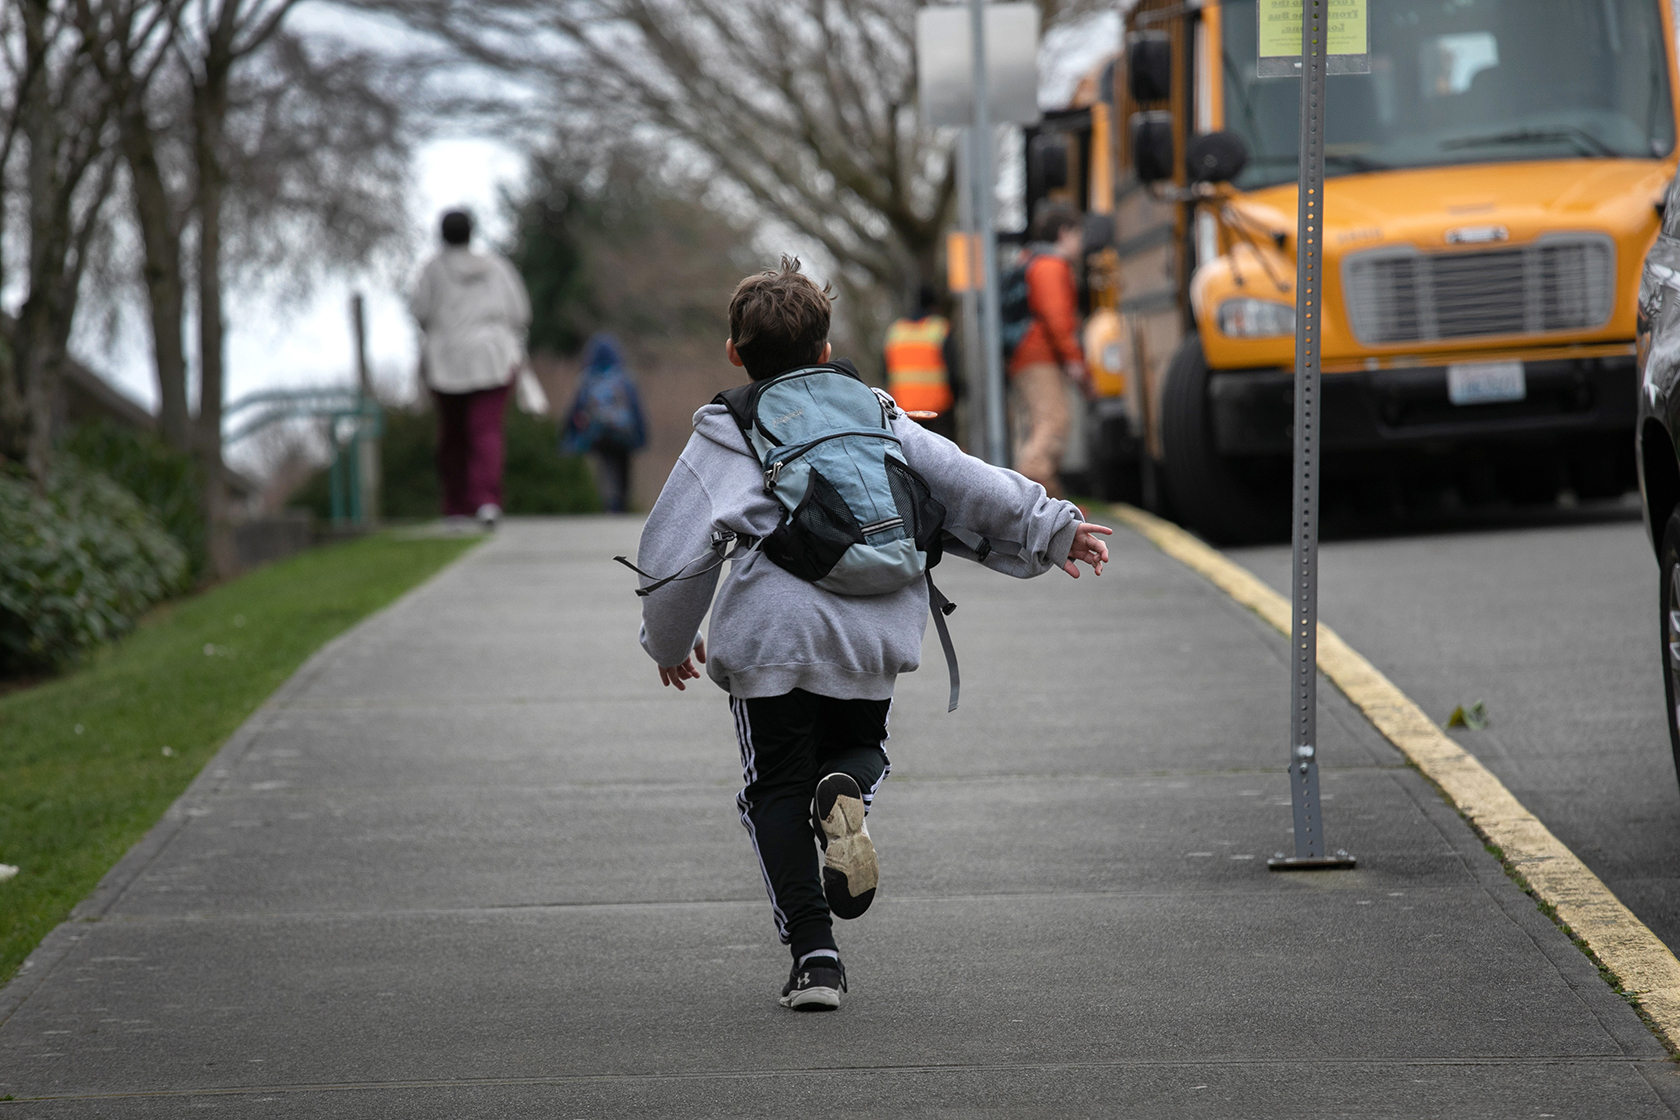 Student running down sidewalk; school bus in distance